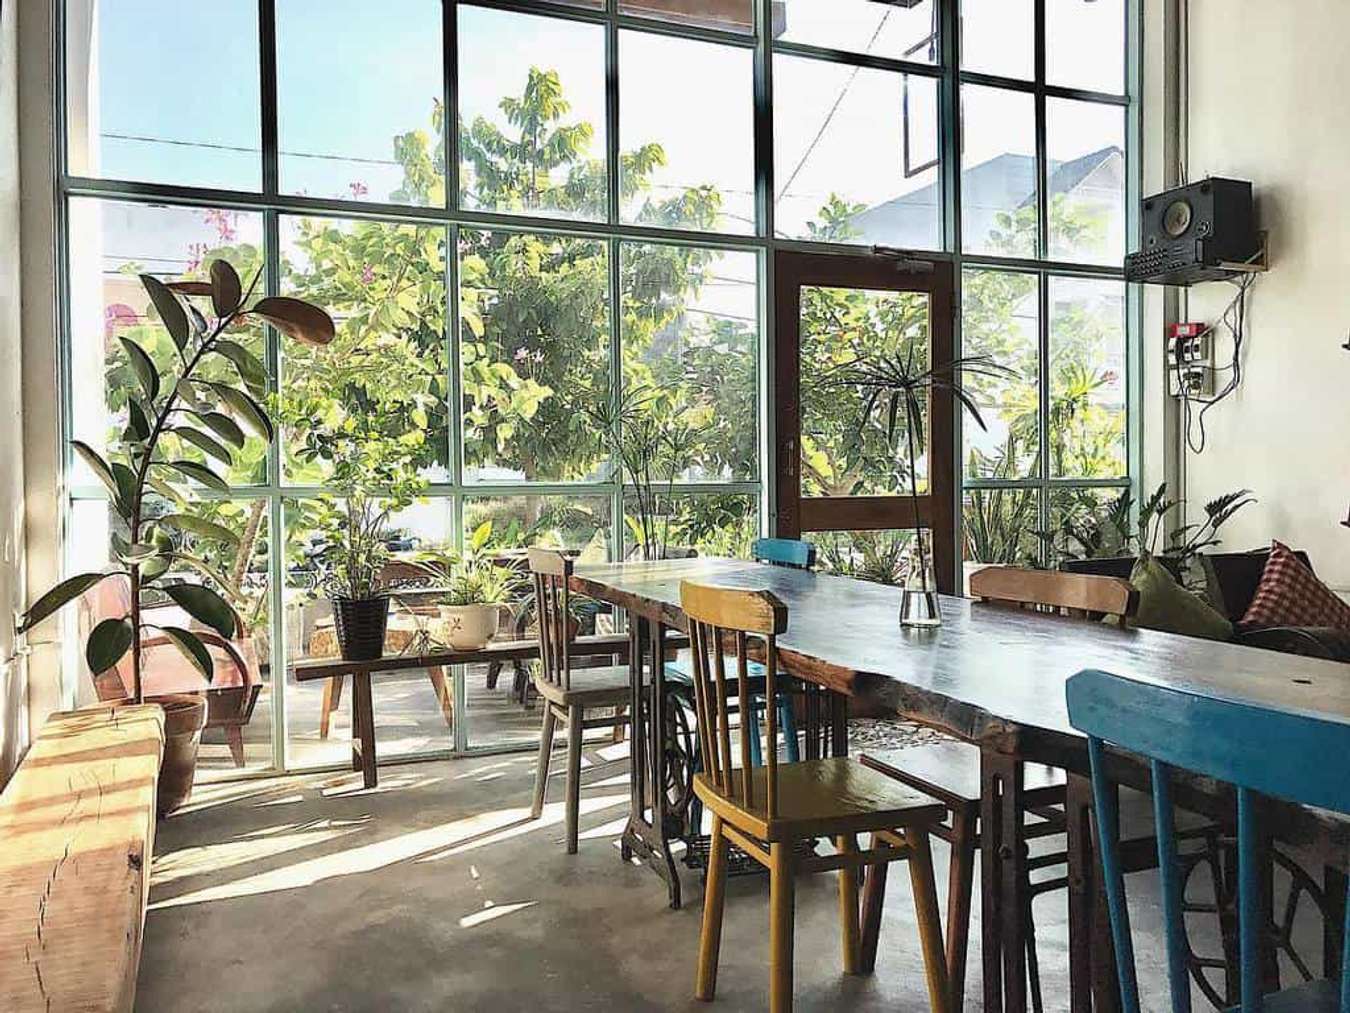 10 quán cà phê Phan Thiết đẹp chất ngất cho bạn thoả sức sống ảo